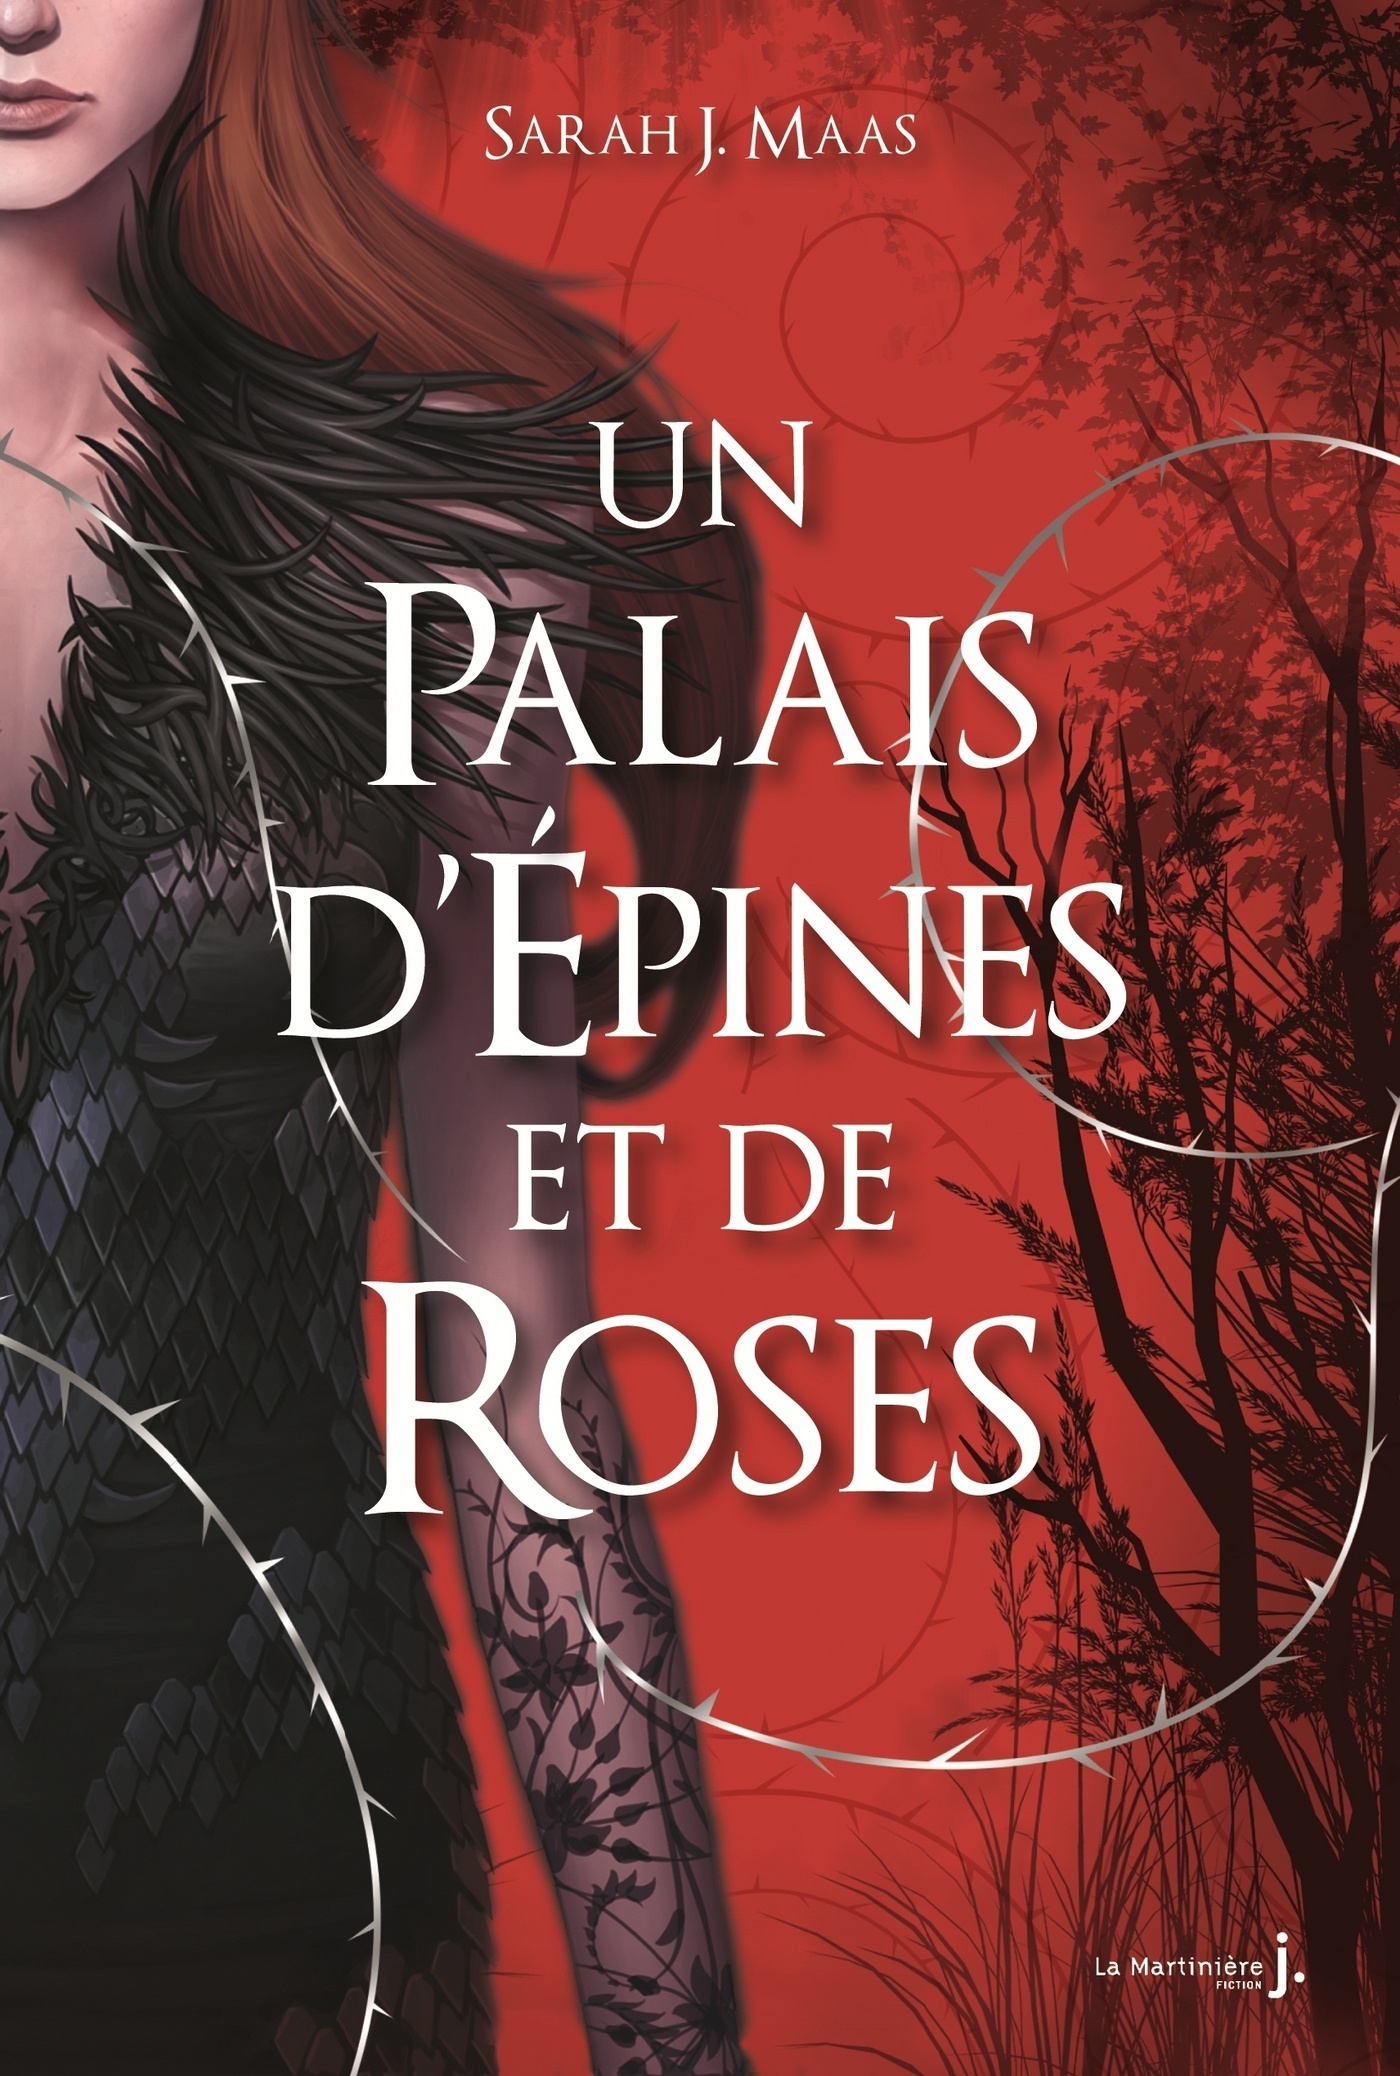 Tag fae sur Entre 2 livres Un-palais-d-epines-et-de-roses-1406059